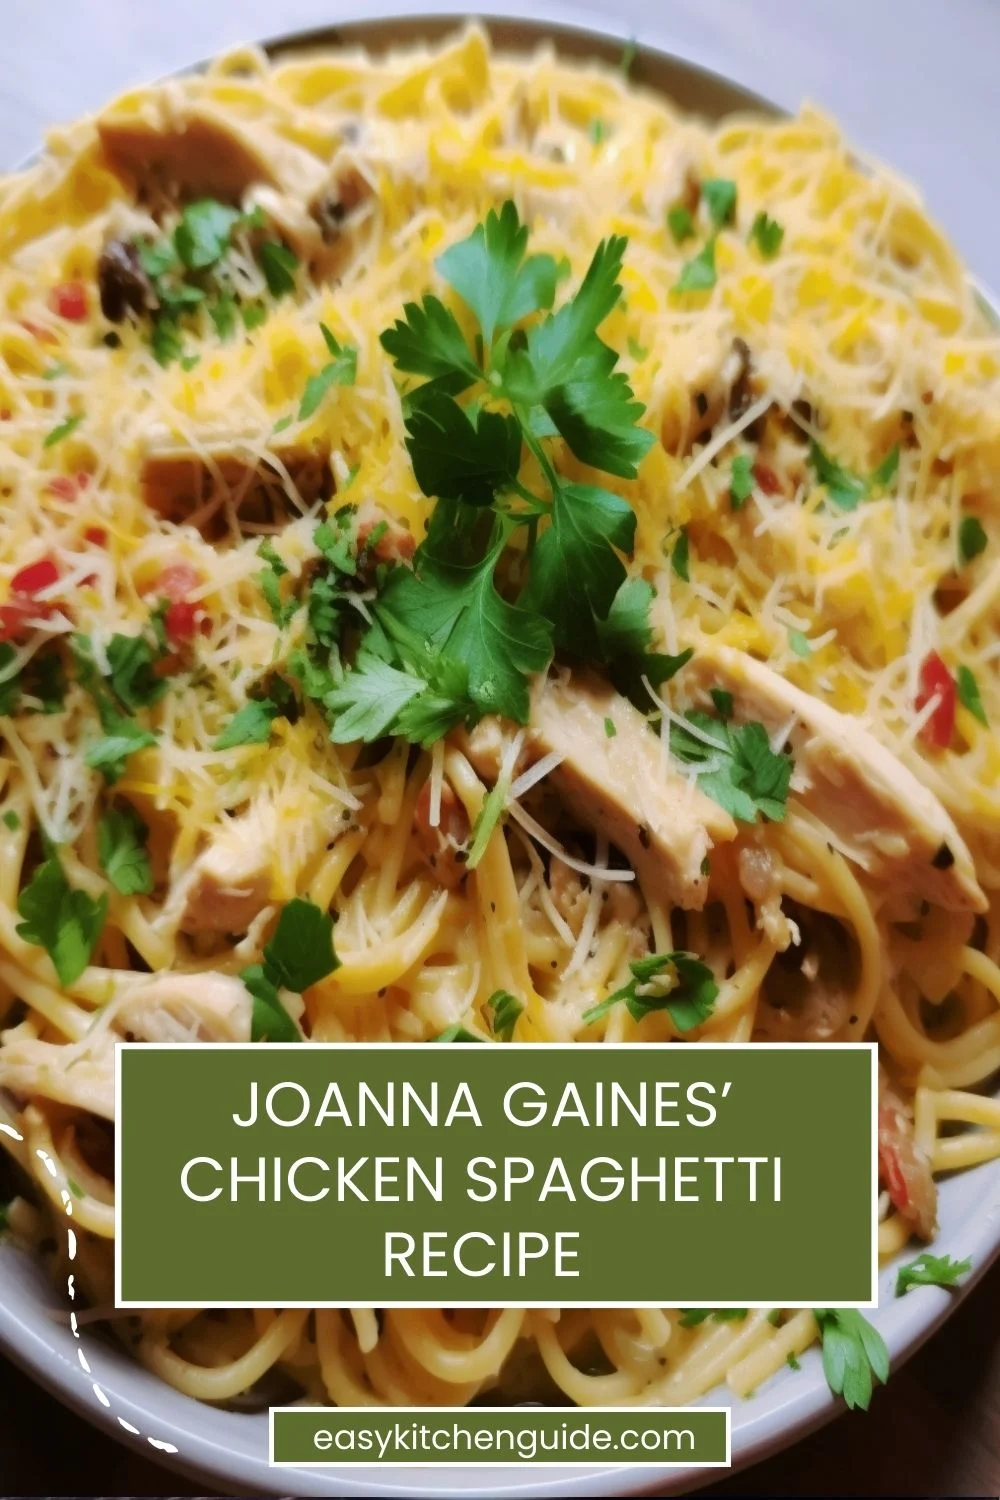 Joanna Gaines’ Chicken Spaghetti Recipe